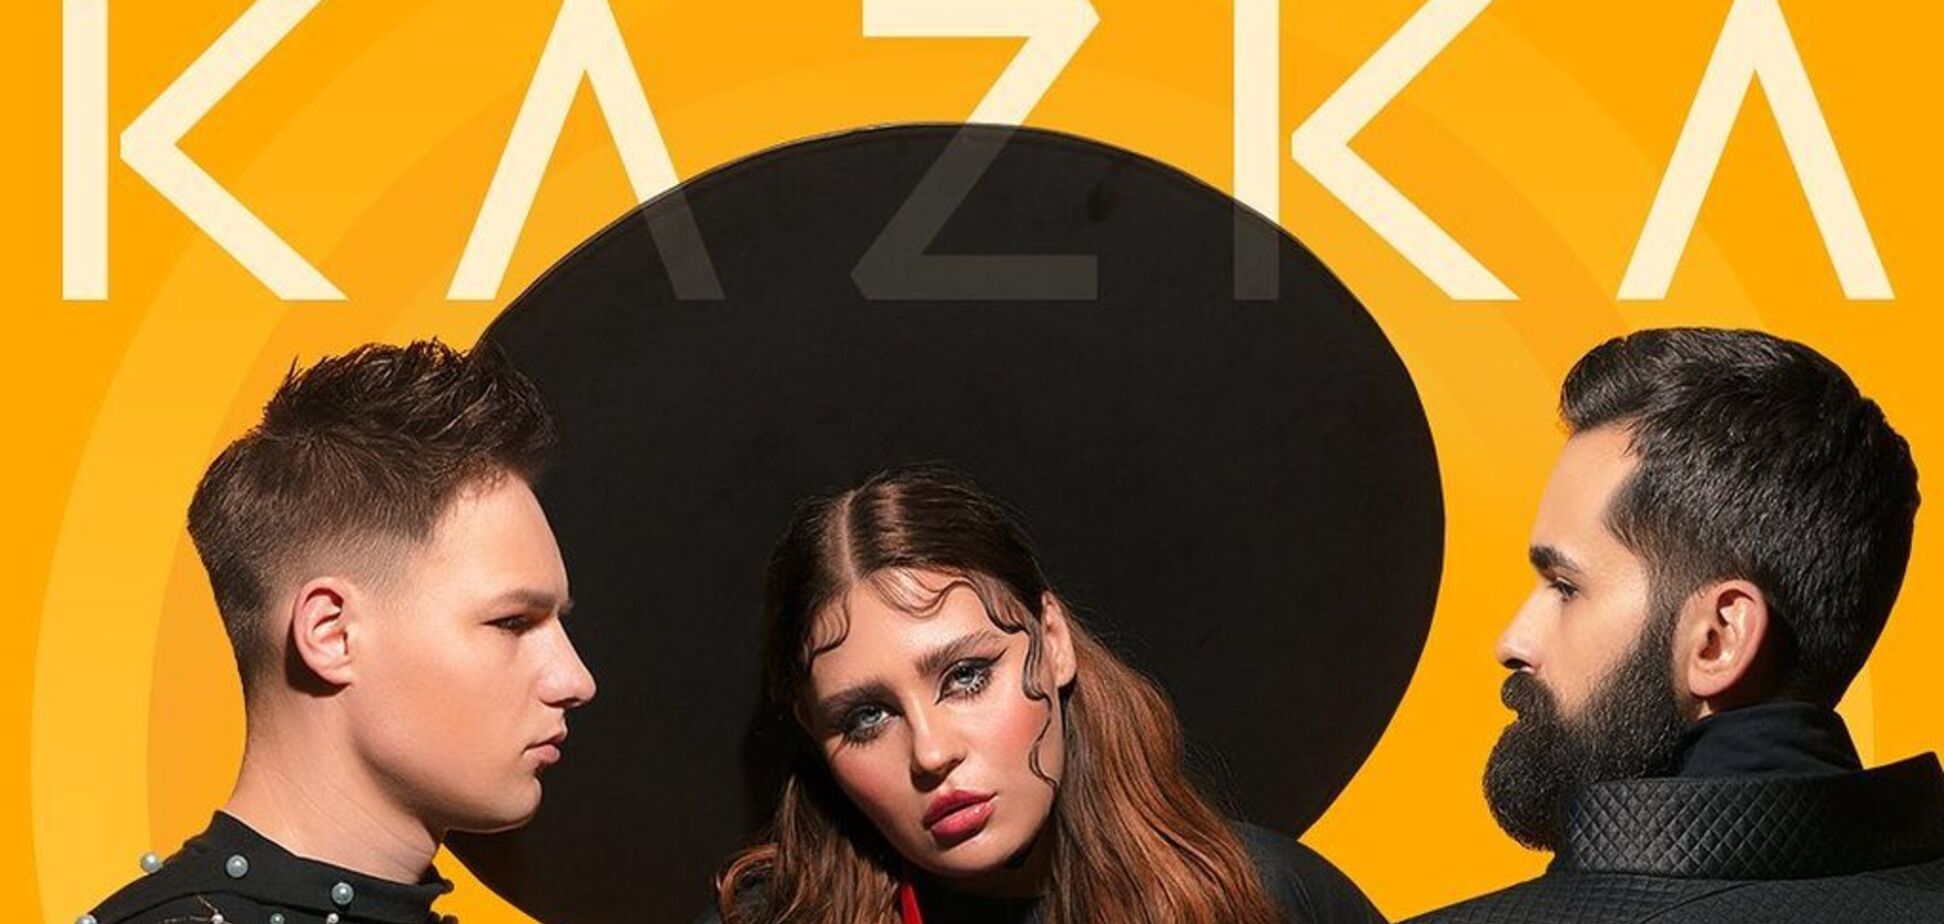 'Ничего непонятно': новый хит KAZKA вызвал споры в сети